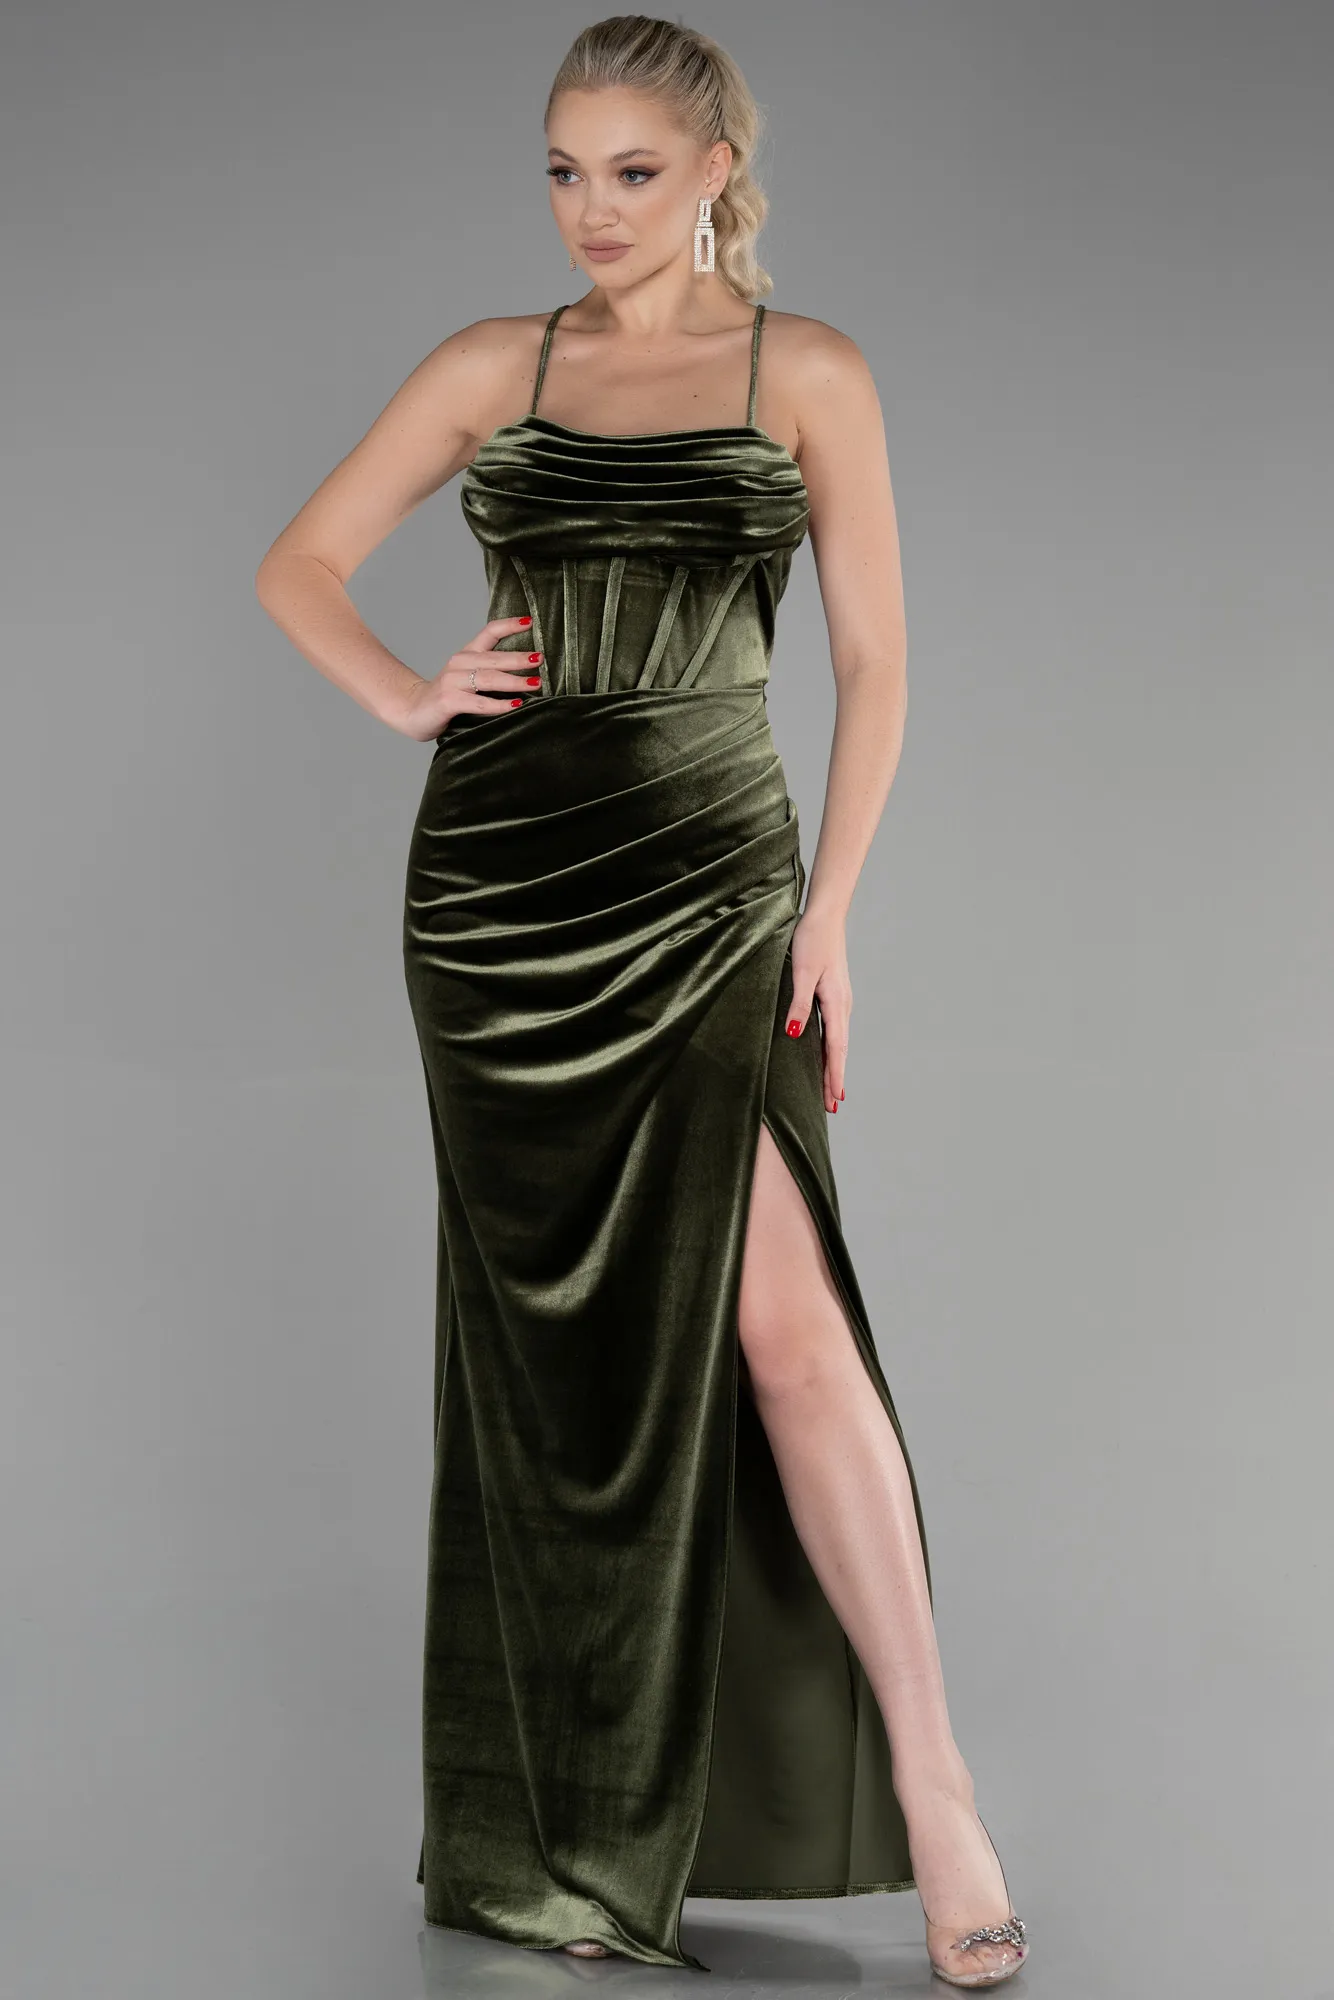 Olive Drab-Long Velvet Evening Dress ABU3395